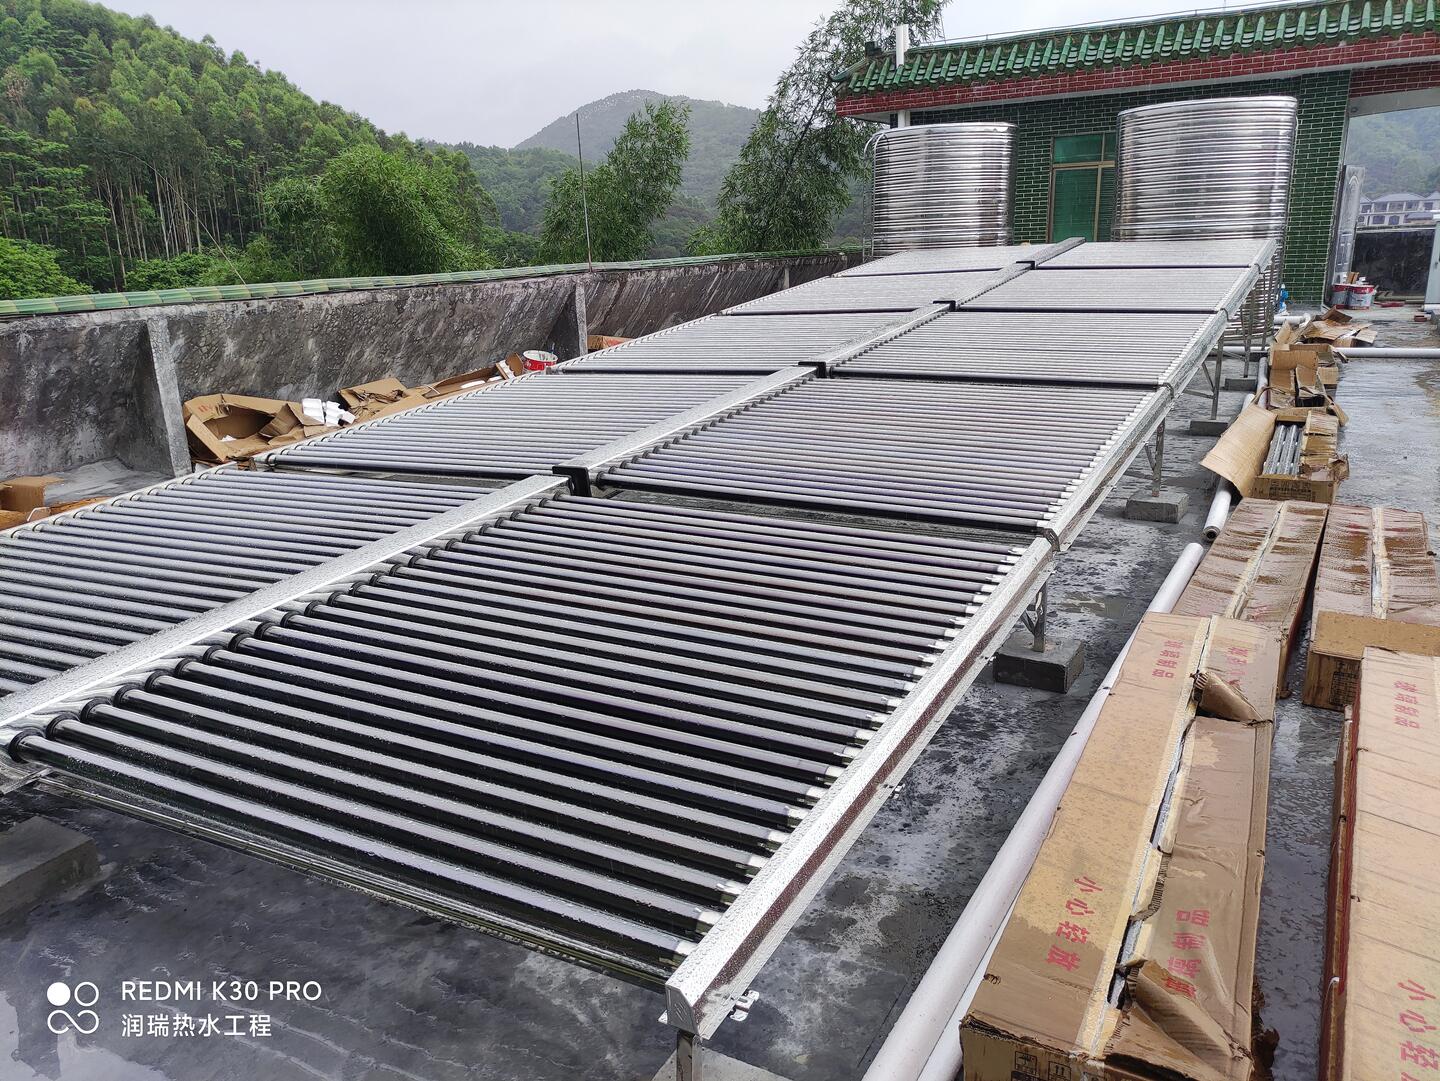 广州从化温泉酒店度假村海尔空气能热泵辅助太阳能真空管热水安装工程